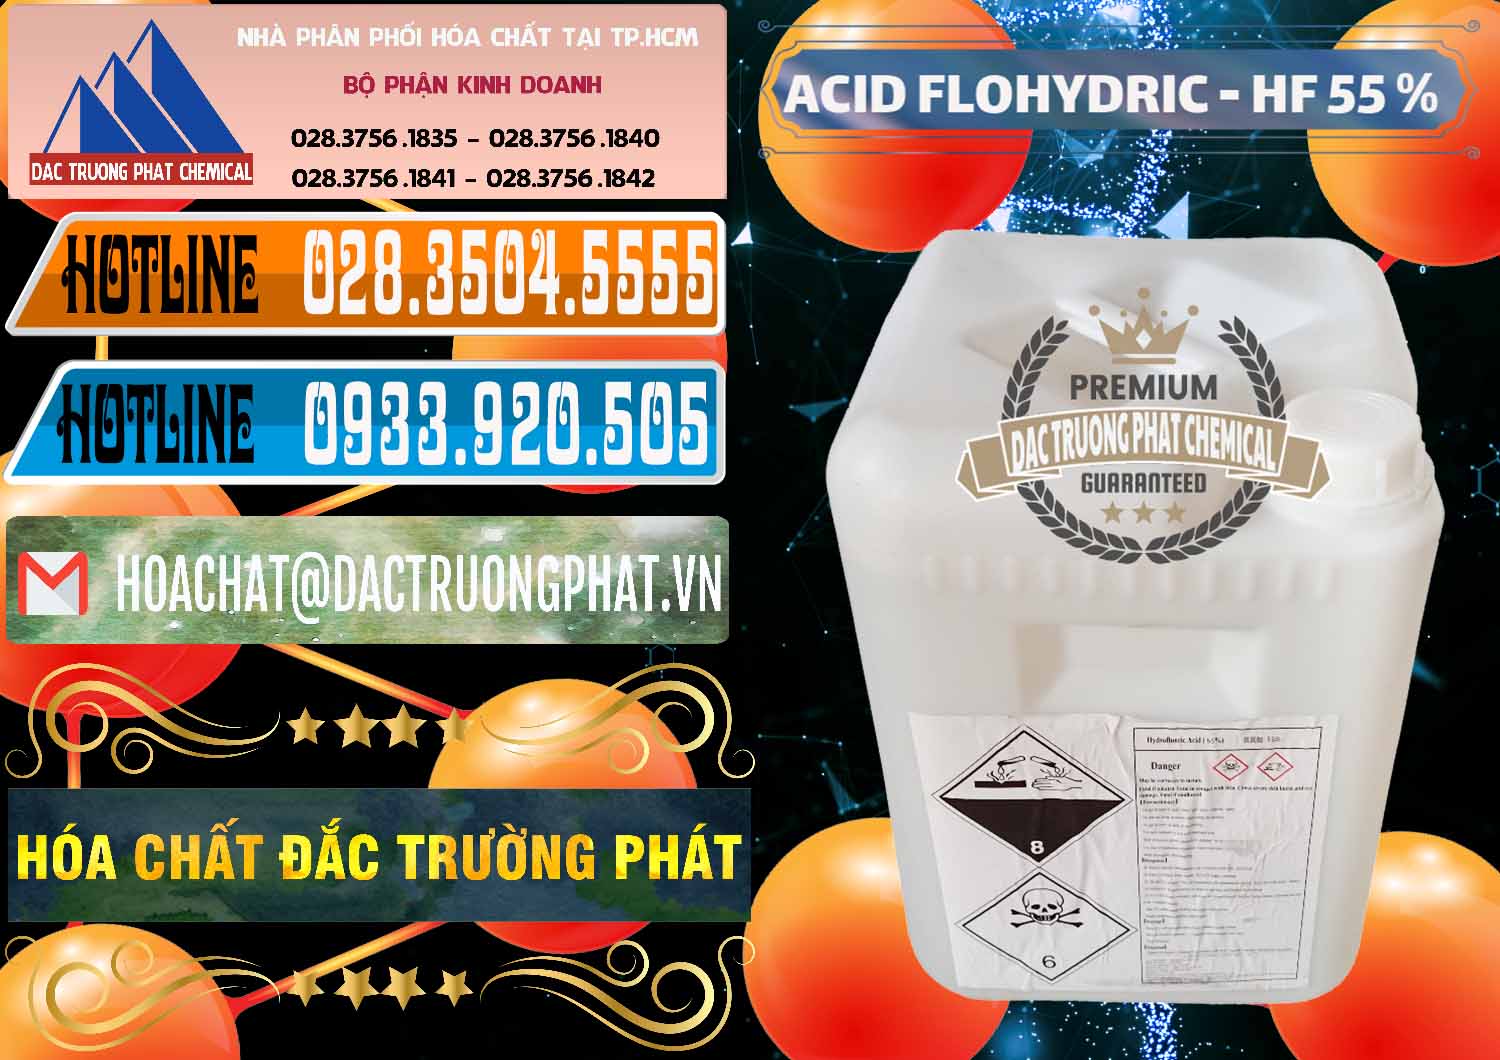 Cty chuyên kinh doanh ( bán ) Axit HF - Acid HF 55% Can Trắng Trung Quốc China - 0079 - Nhà cung cấp và kinh doanh hóa chất tại TP.HCM - stmp.net